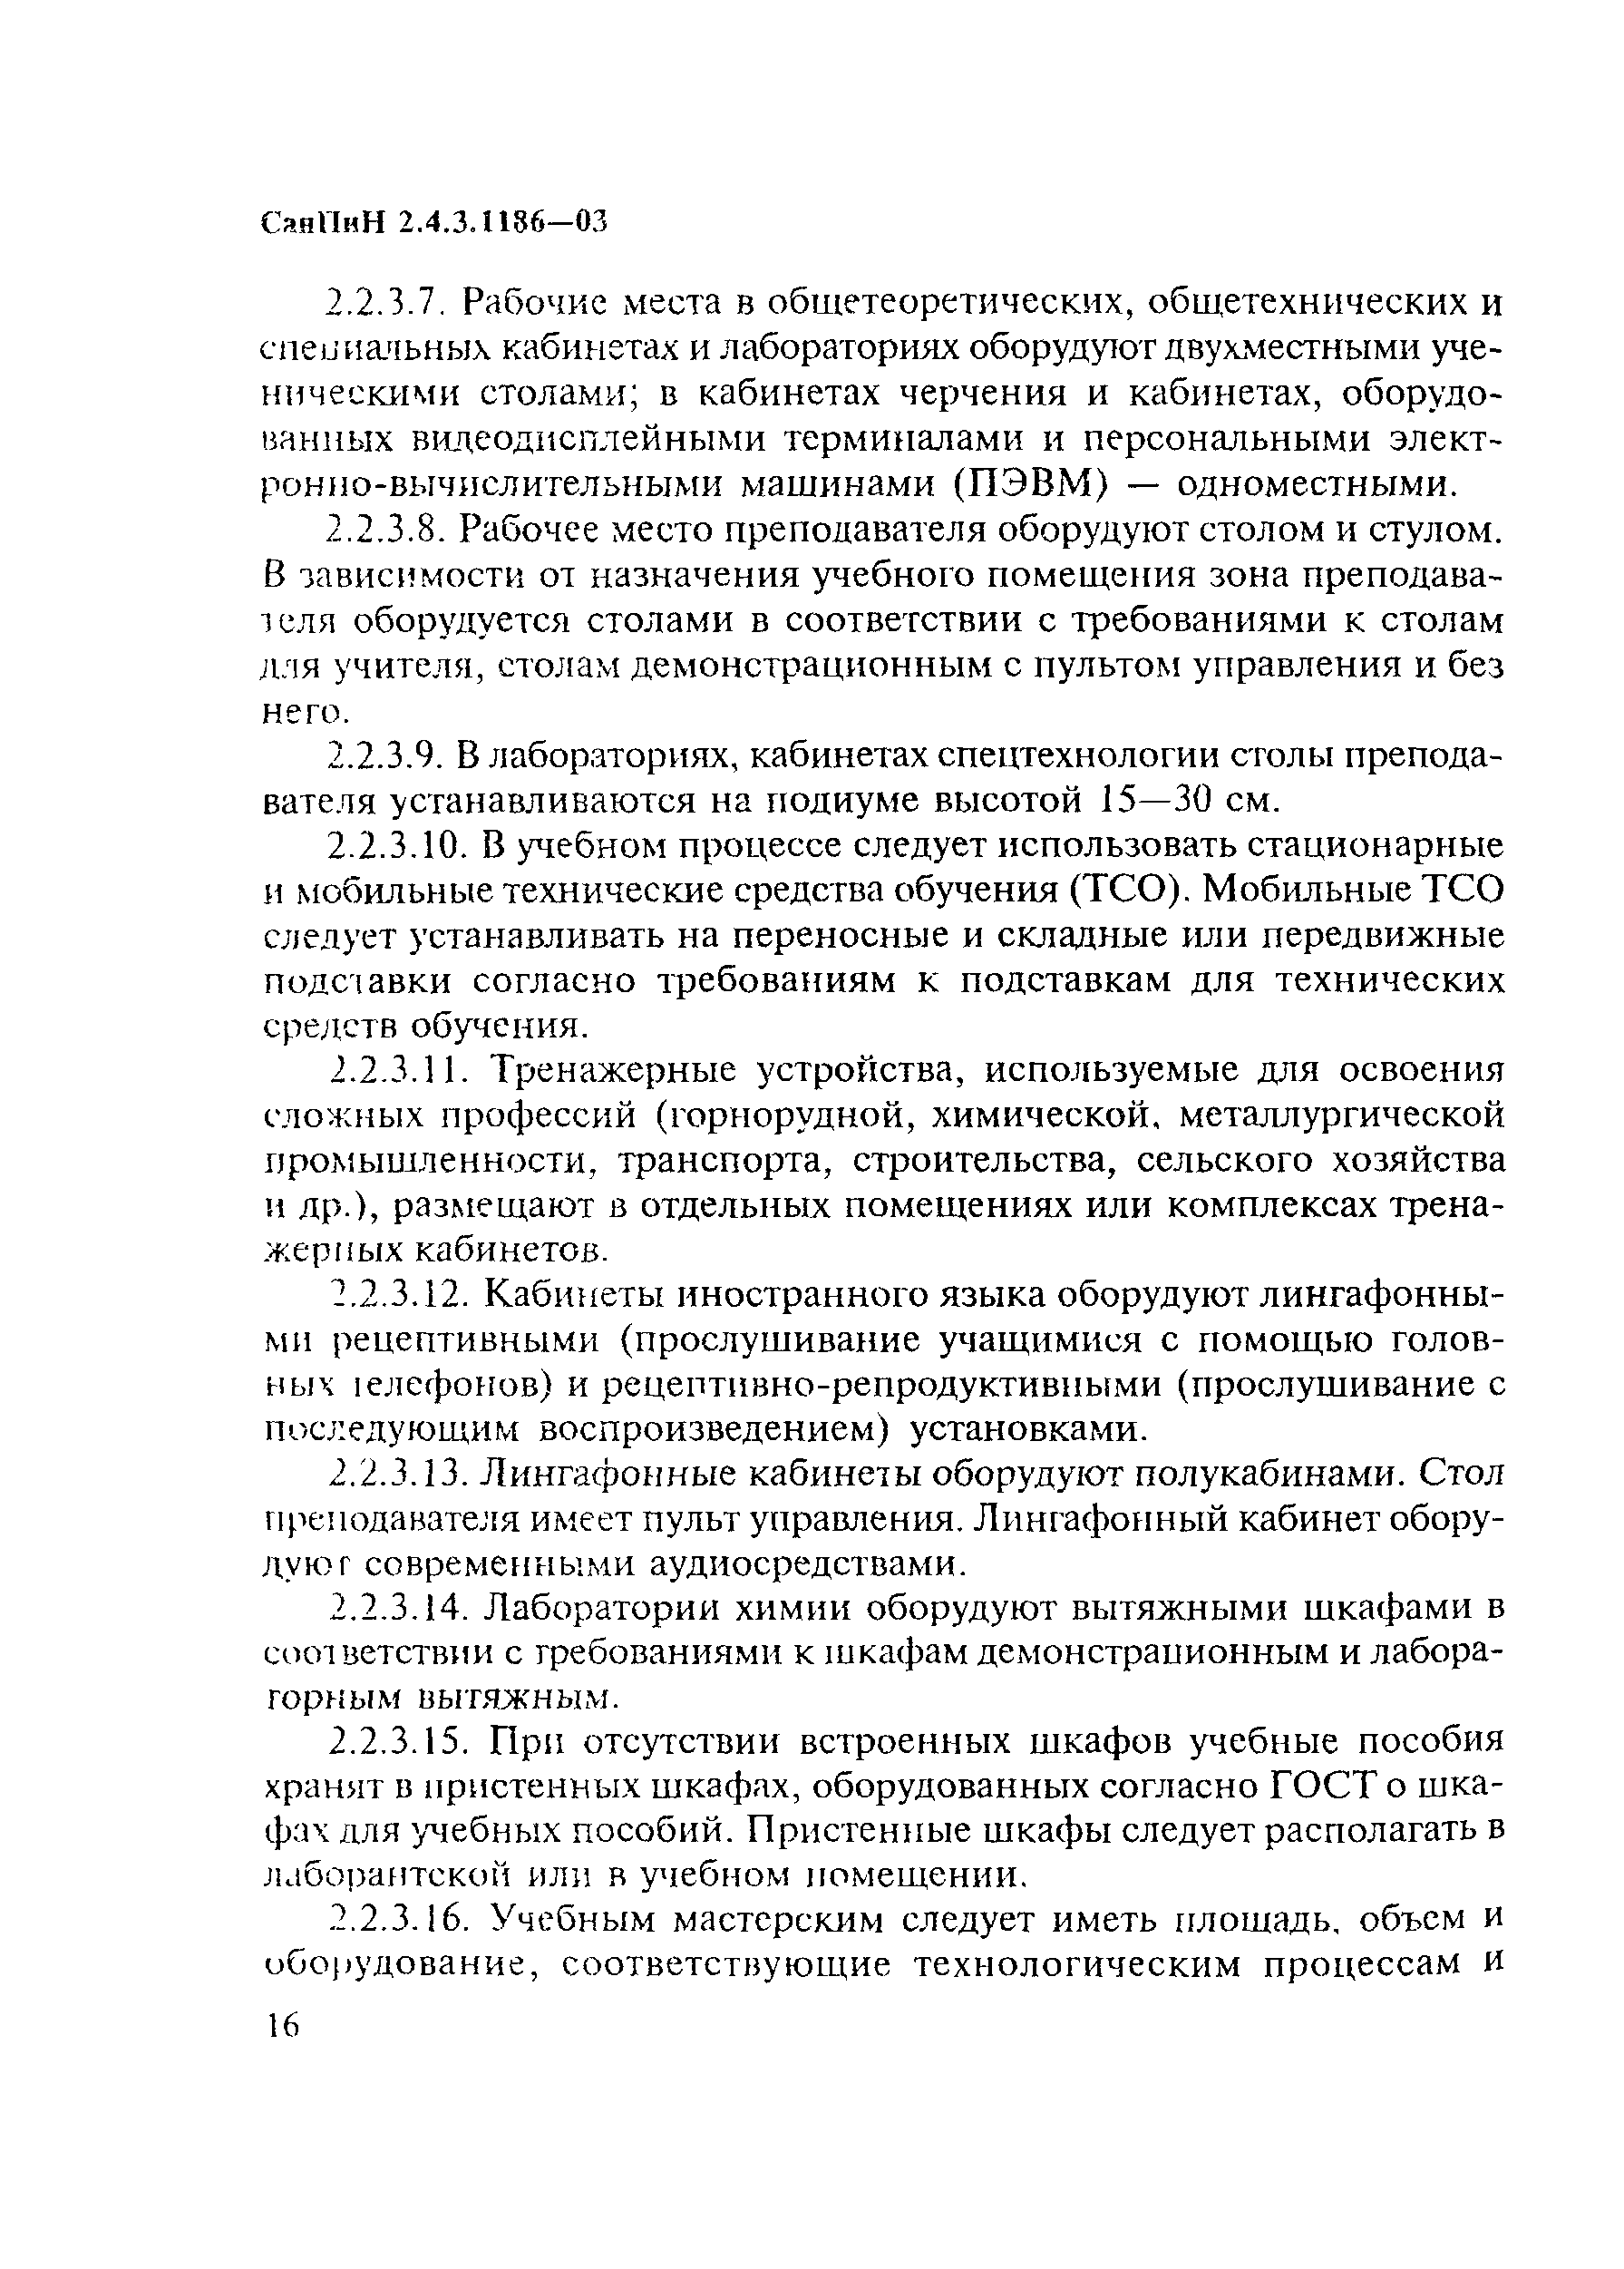 СанПиН 2.4.3.1186-03